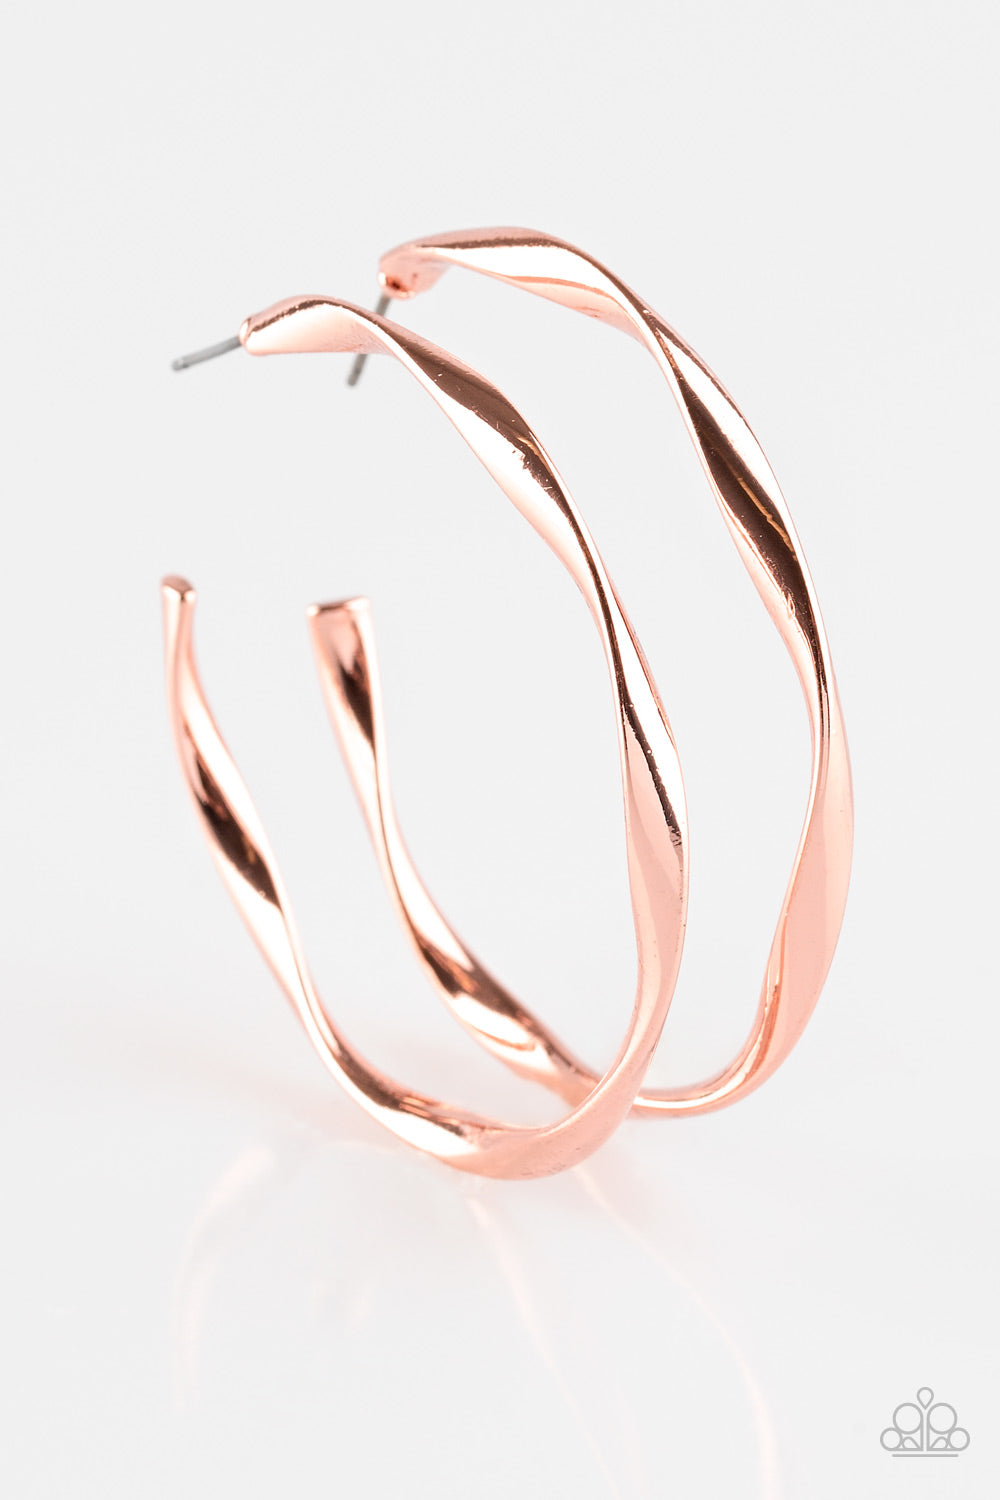 Plot Twist-Copper Earring